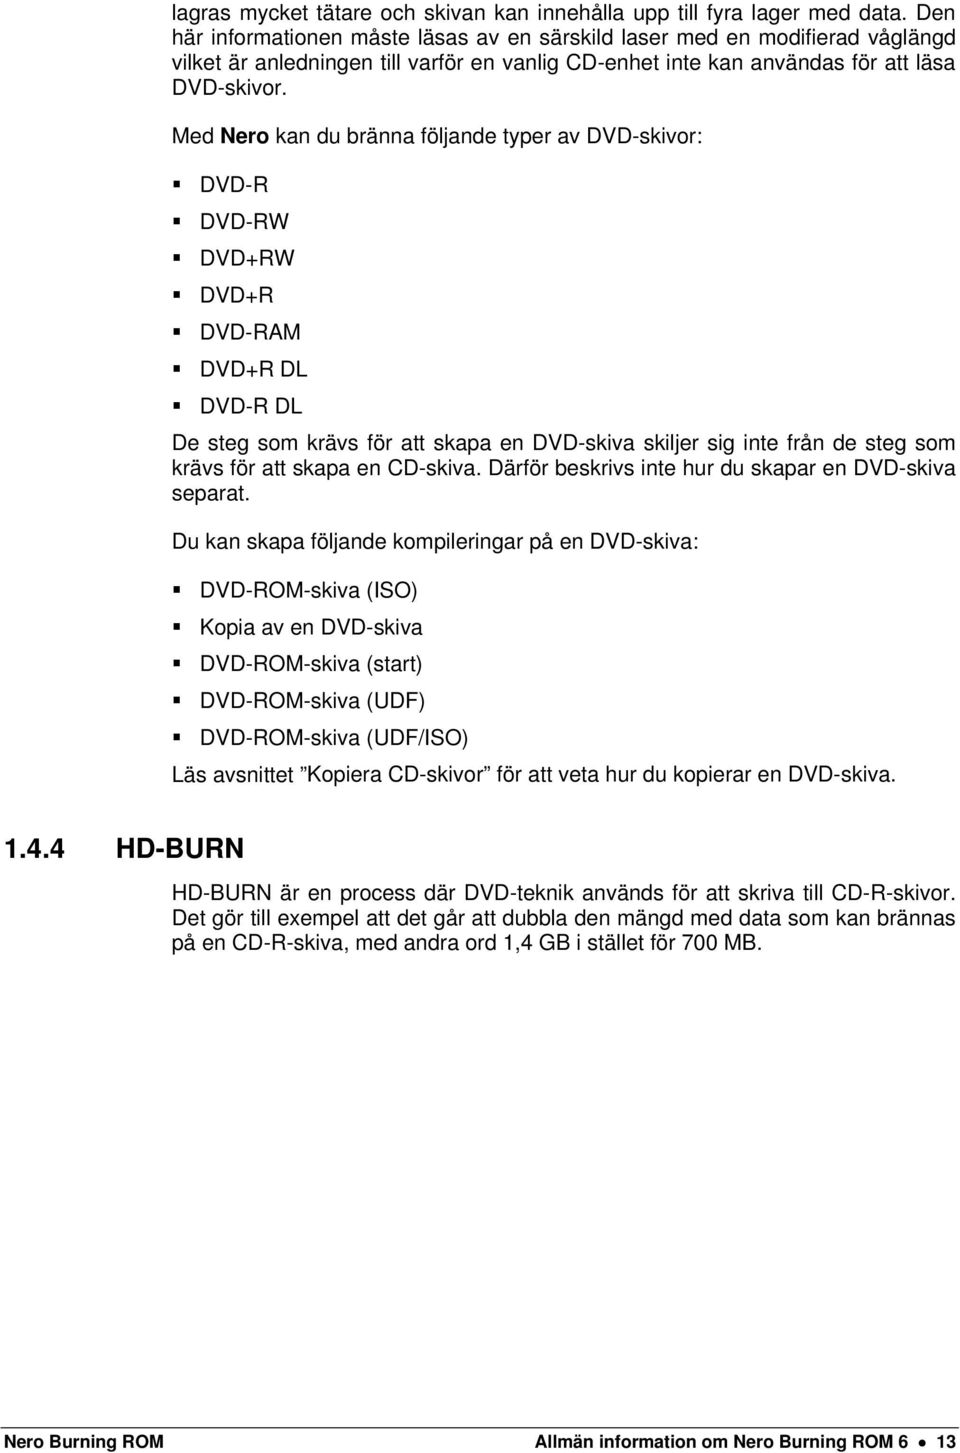 Med Nero kan du bränna följande typer av DVD-skivor: DVD-R DVD-RW DVD+RW DVD+R DVD-RAM DVD+R DL DVD-R DL De steg som krävs för att skapa en DVD-skiva skiljer sig inte från de steg som krävs för att